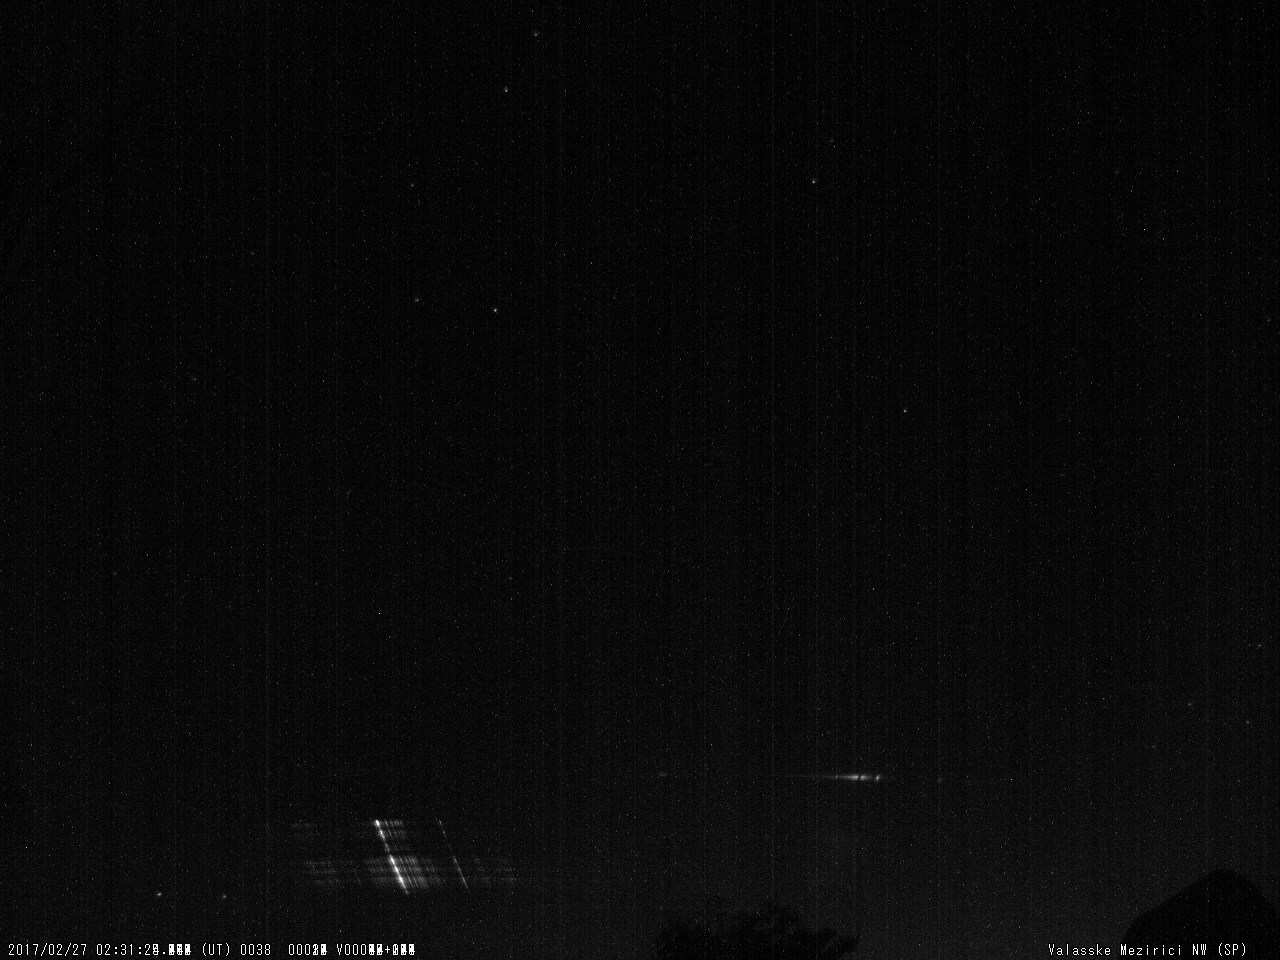 Obr. 10: Spektrum jasného meteoru 20170227_023124, spektrograf SPNW. Autor: Hvězdárna Valašské Meziříčí